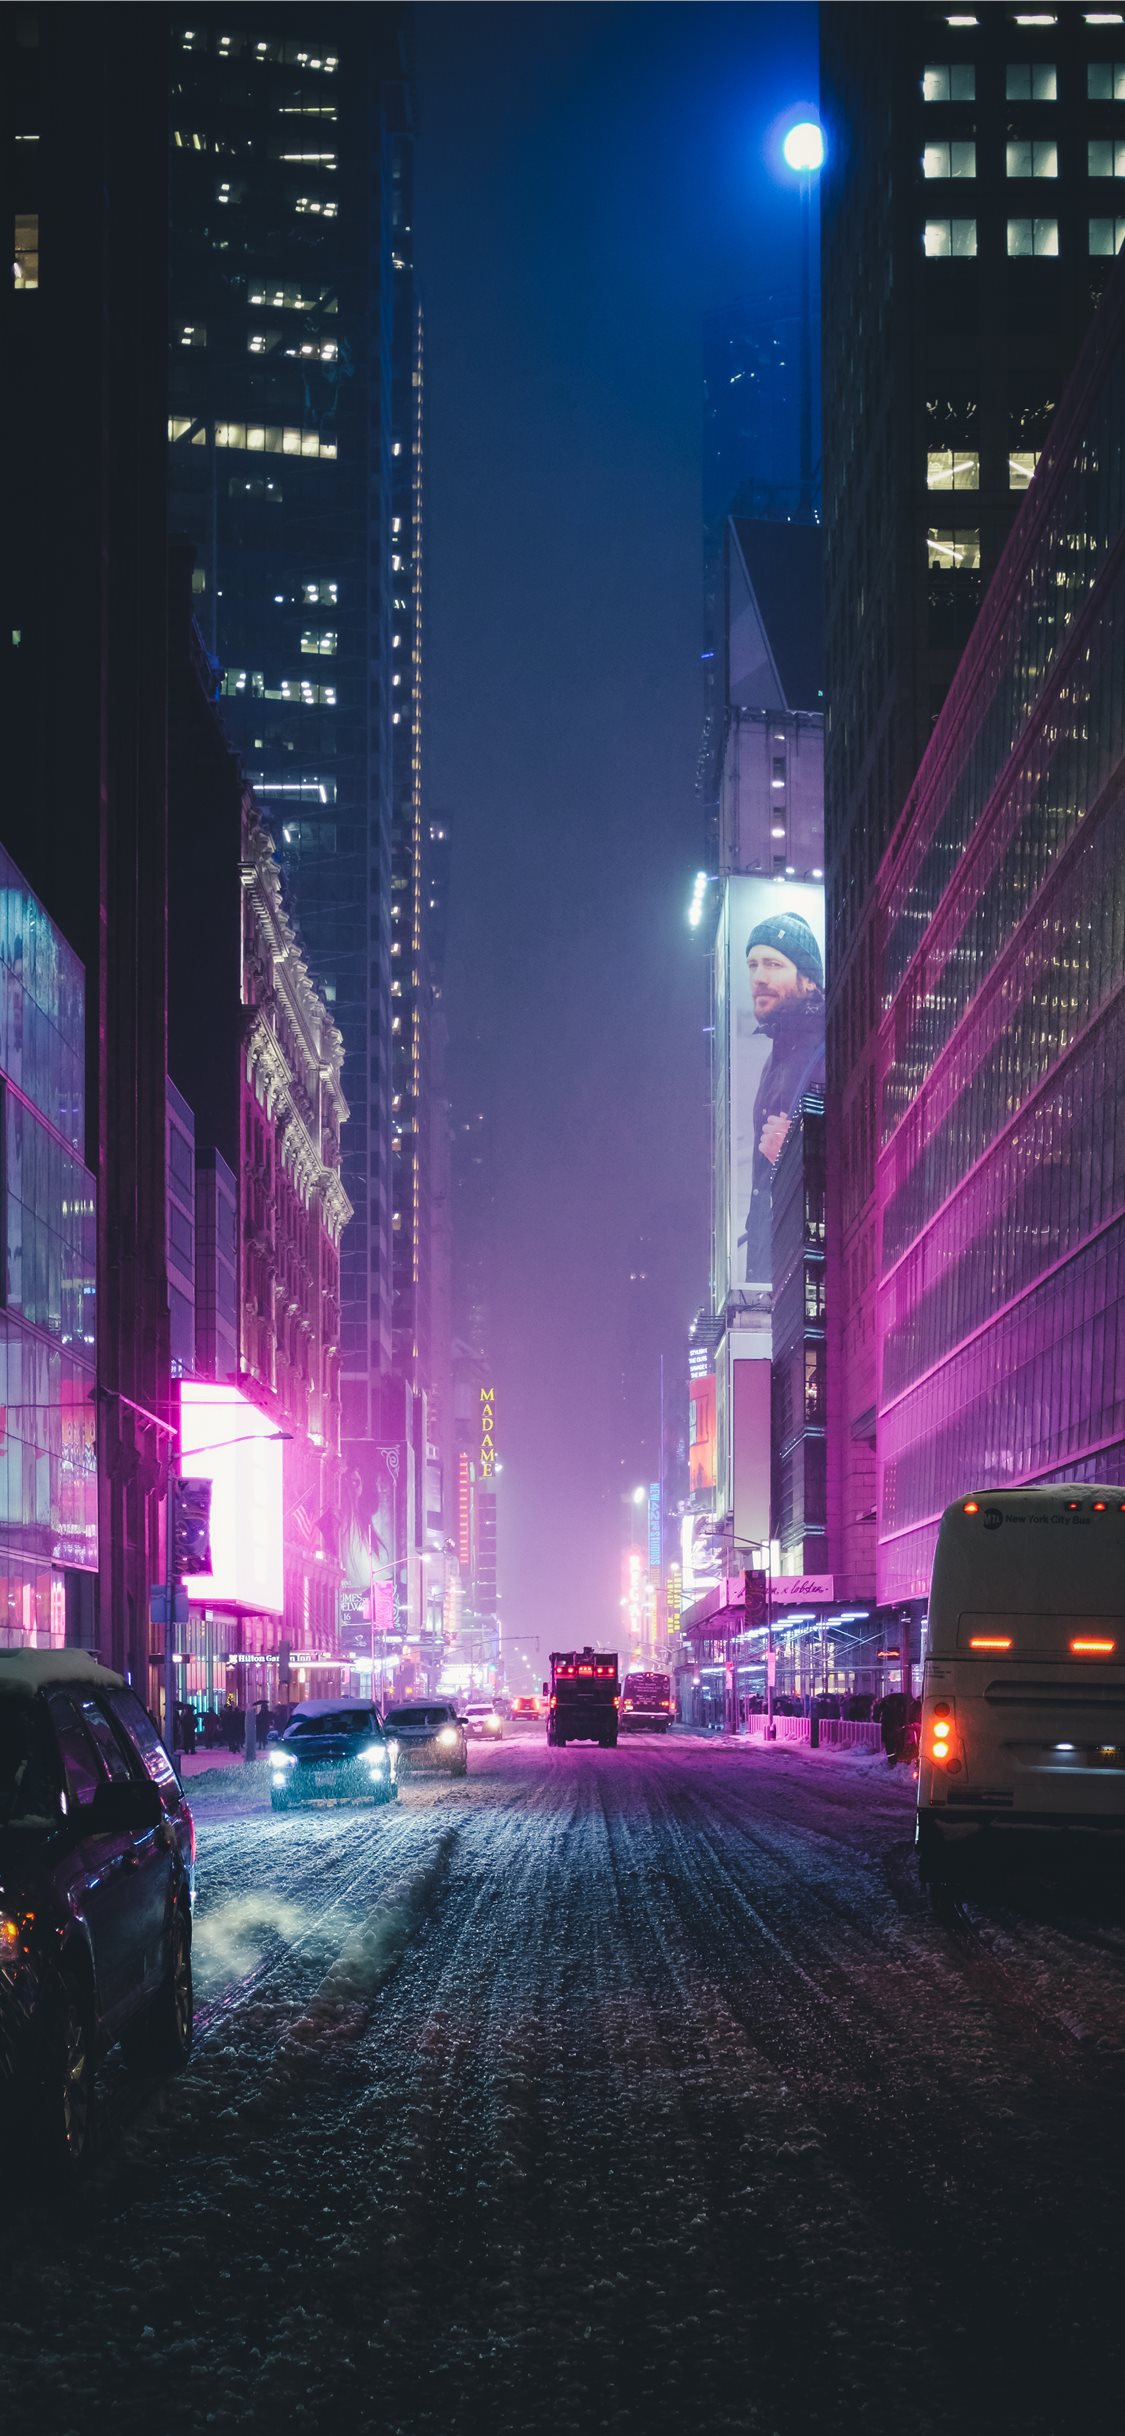 New York neon dưới tuyết cho iPhone 11 miễn phí tải về: Bạn đã từng nghĩ đến việc đổi màn hình iPhone của mình thành một bức tranh phông nền New York đầy màu sắc và sống động? Hãy thử với bức tranh này, mang lại cho bạn những cảm giác ấm áp của phố New York giữa mùa đông. Dưới tuyết phủ mỏng,vẻ đẹp đường phố được tăng cường với những màu neon sặc sỡ. Tải ngay về để thấy cho mình sự khác biệt!